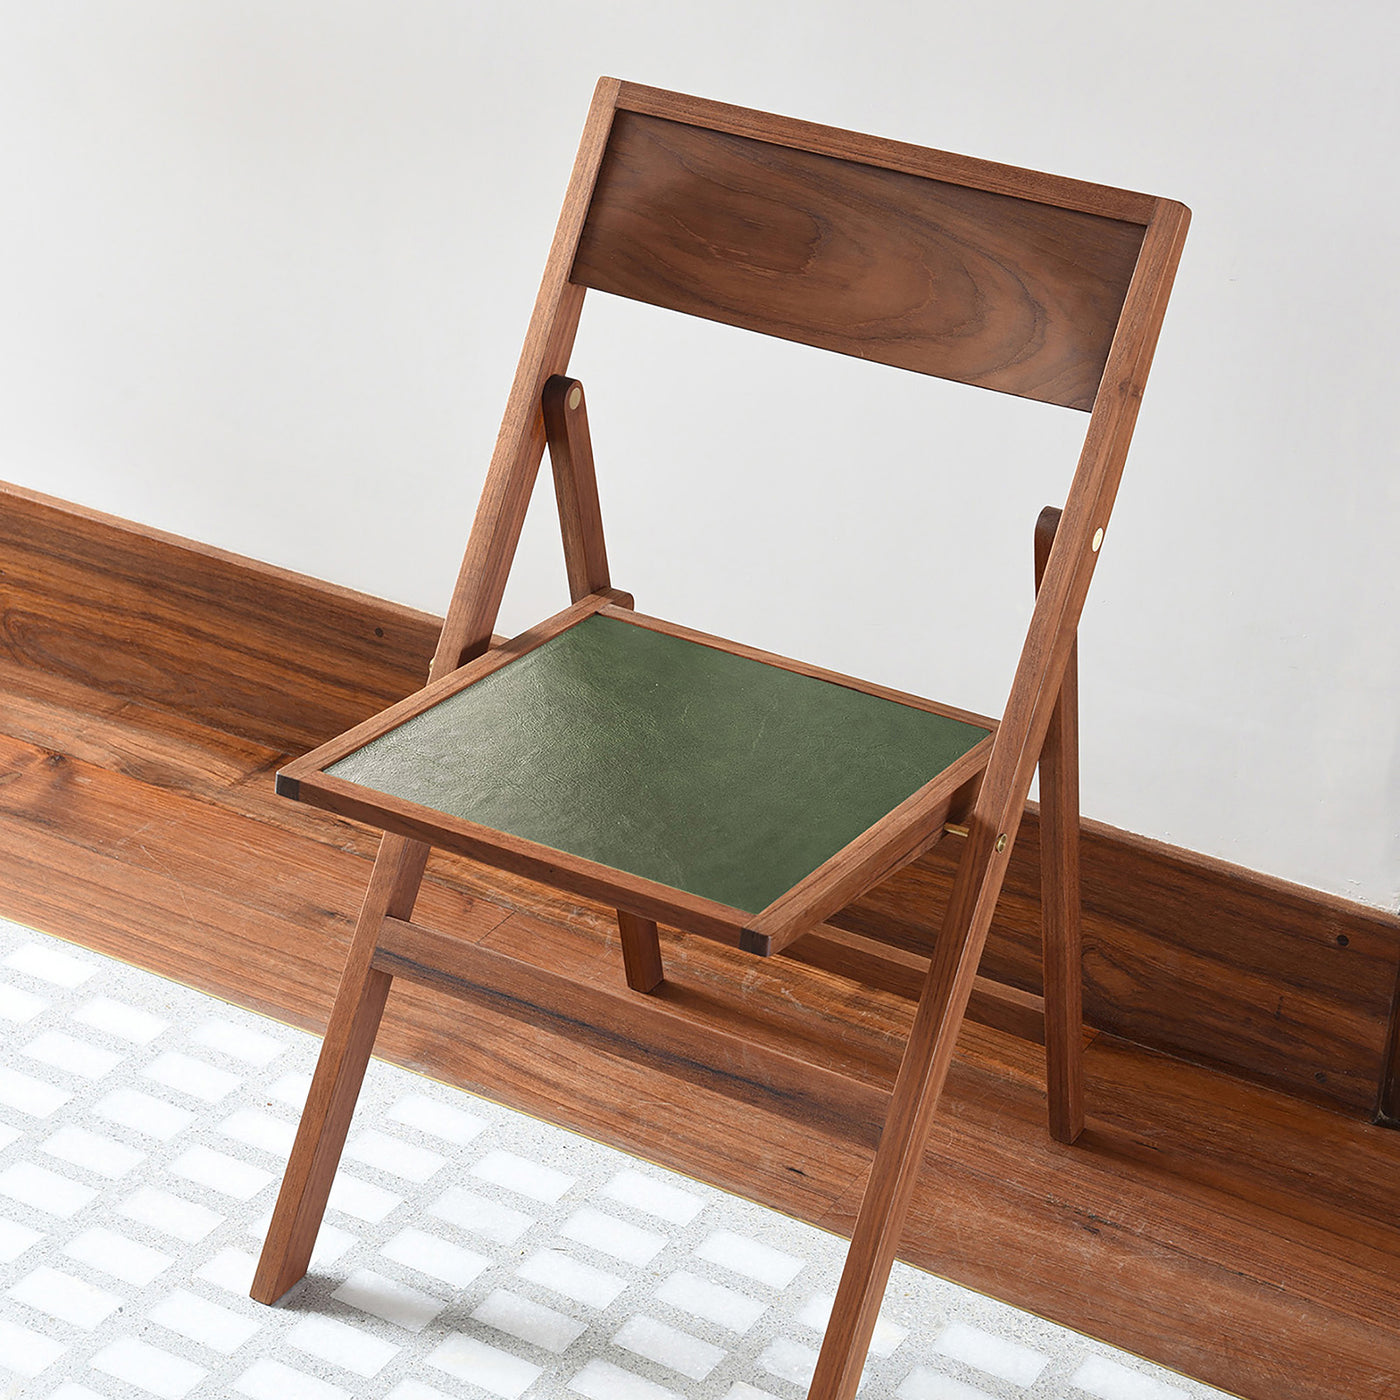 Buy Designer Folding Flat Chair – Teak Seat